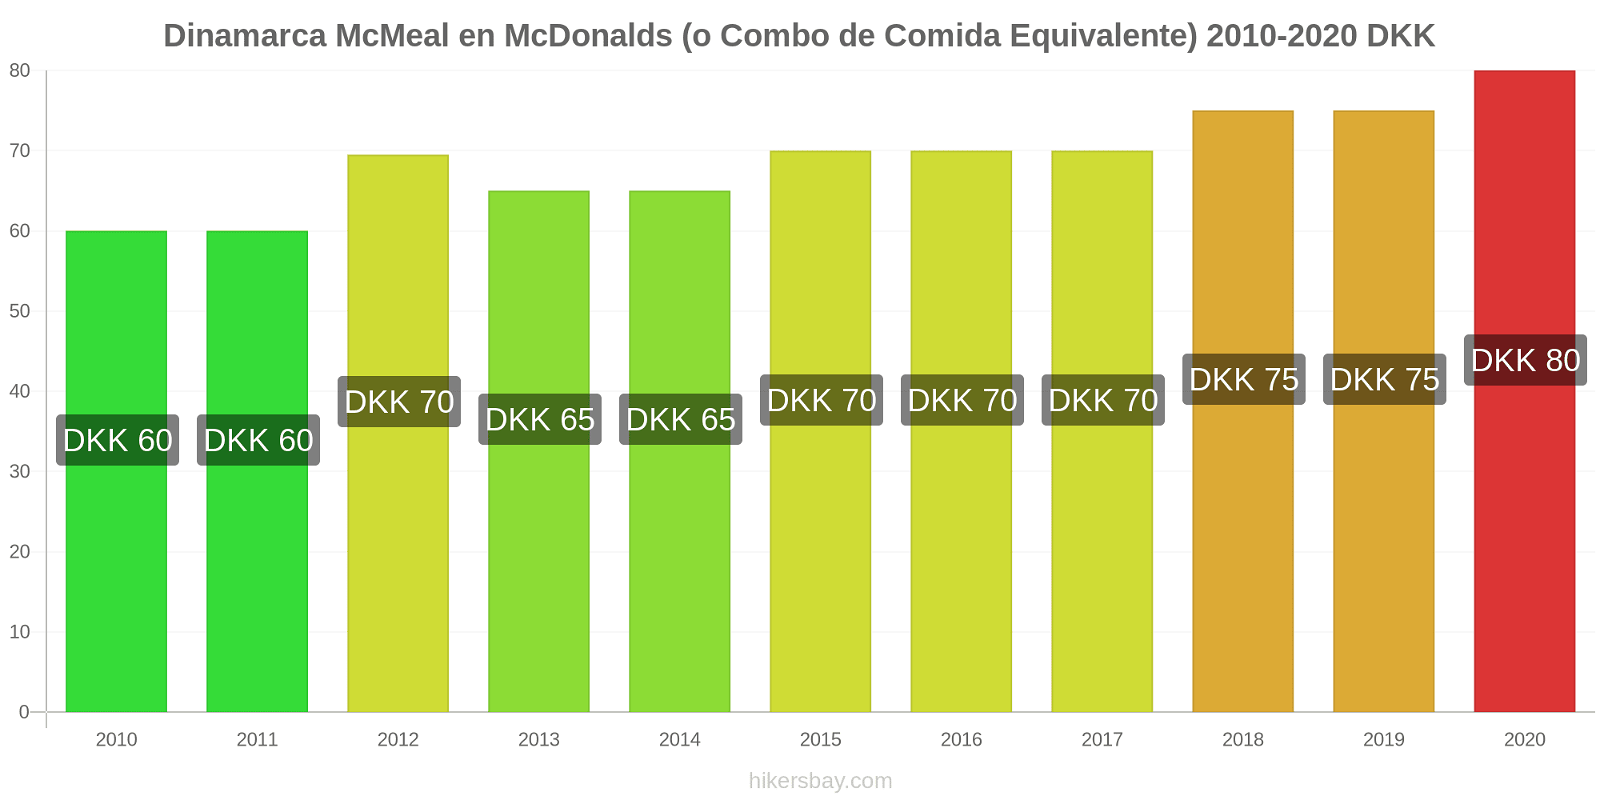 Dinamarca cambios de precios McMeal en McDonalds (o menú equivalente) hikersbay.com